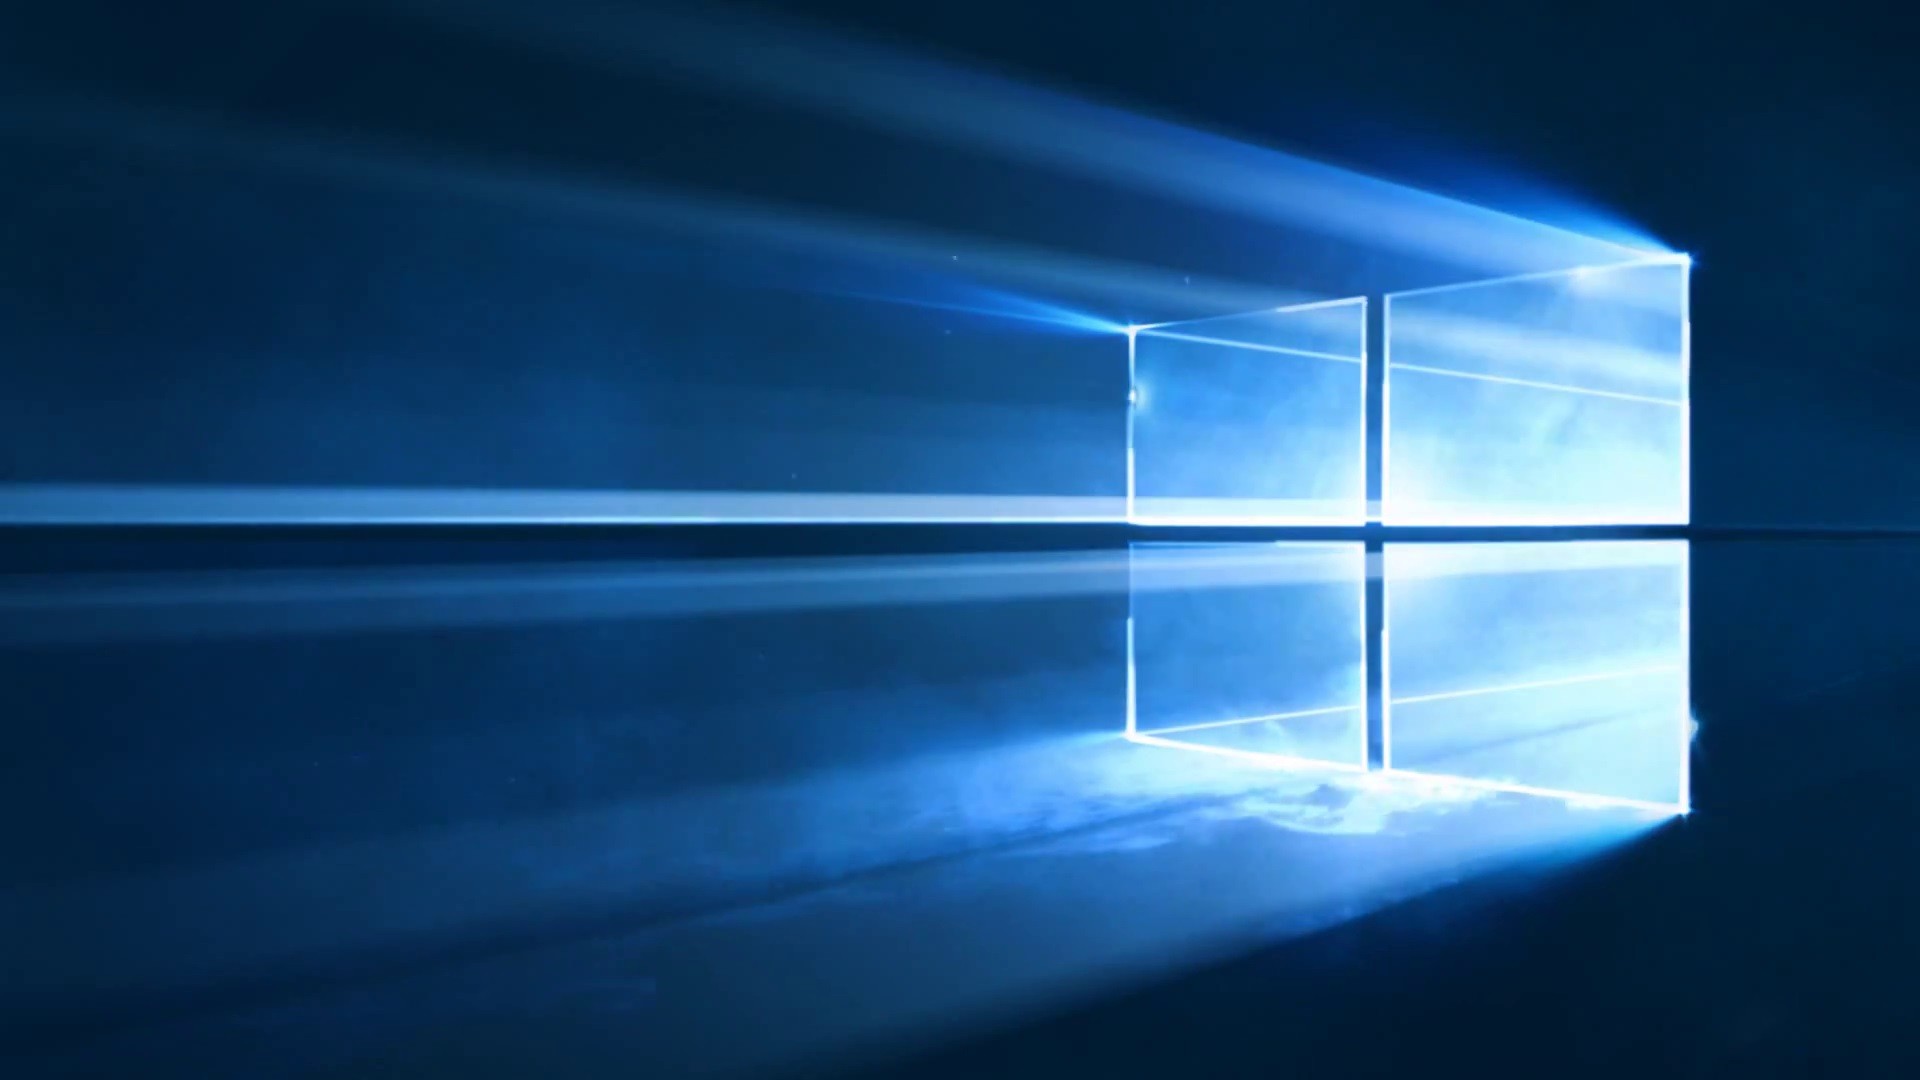 Бесплатное обновление до Windows 10 все еще возможно, ограничение по времени — рекламный ход - 1